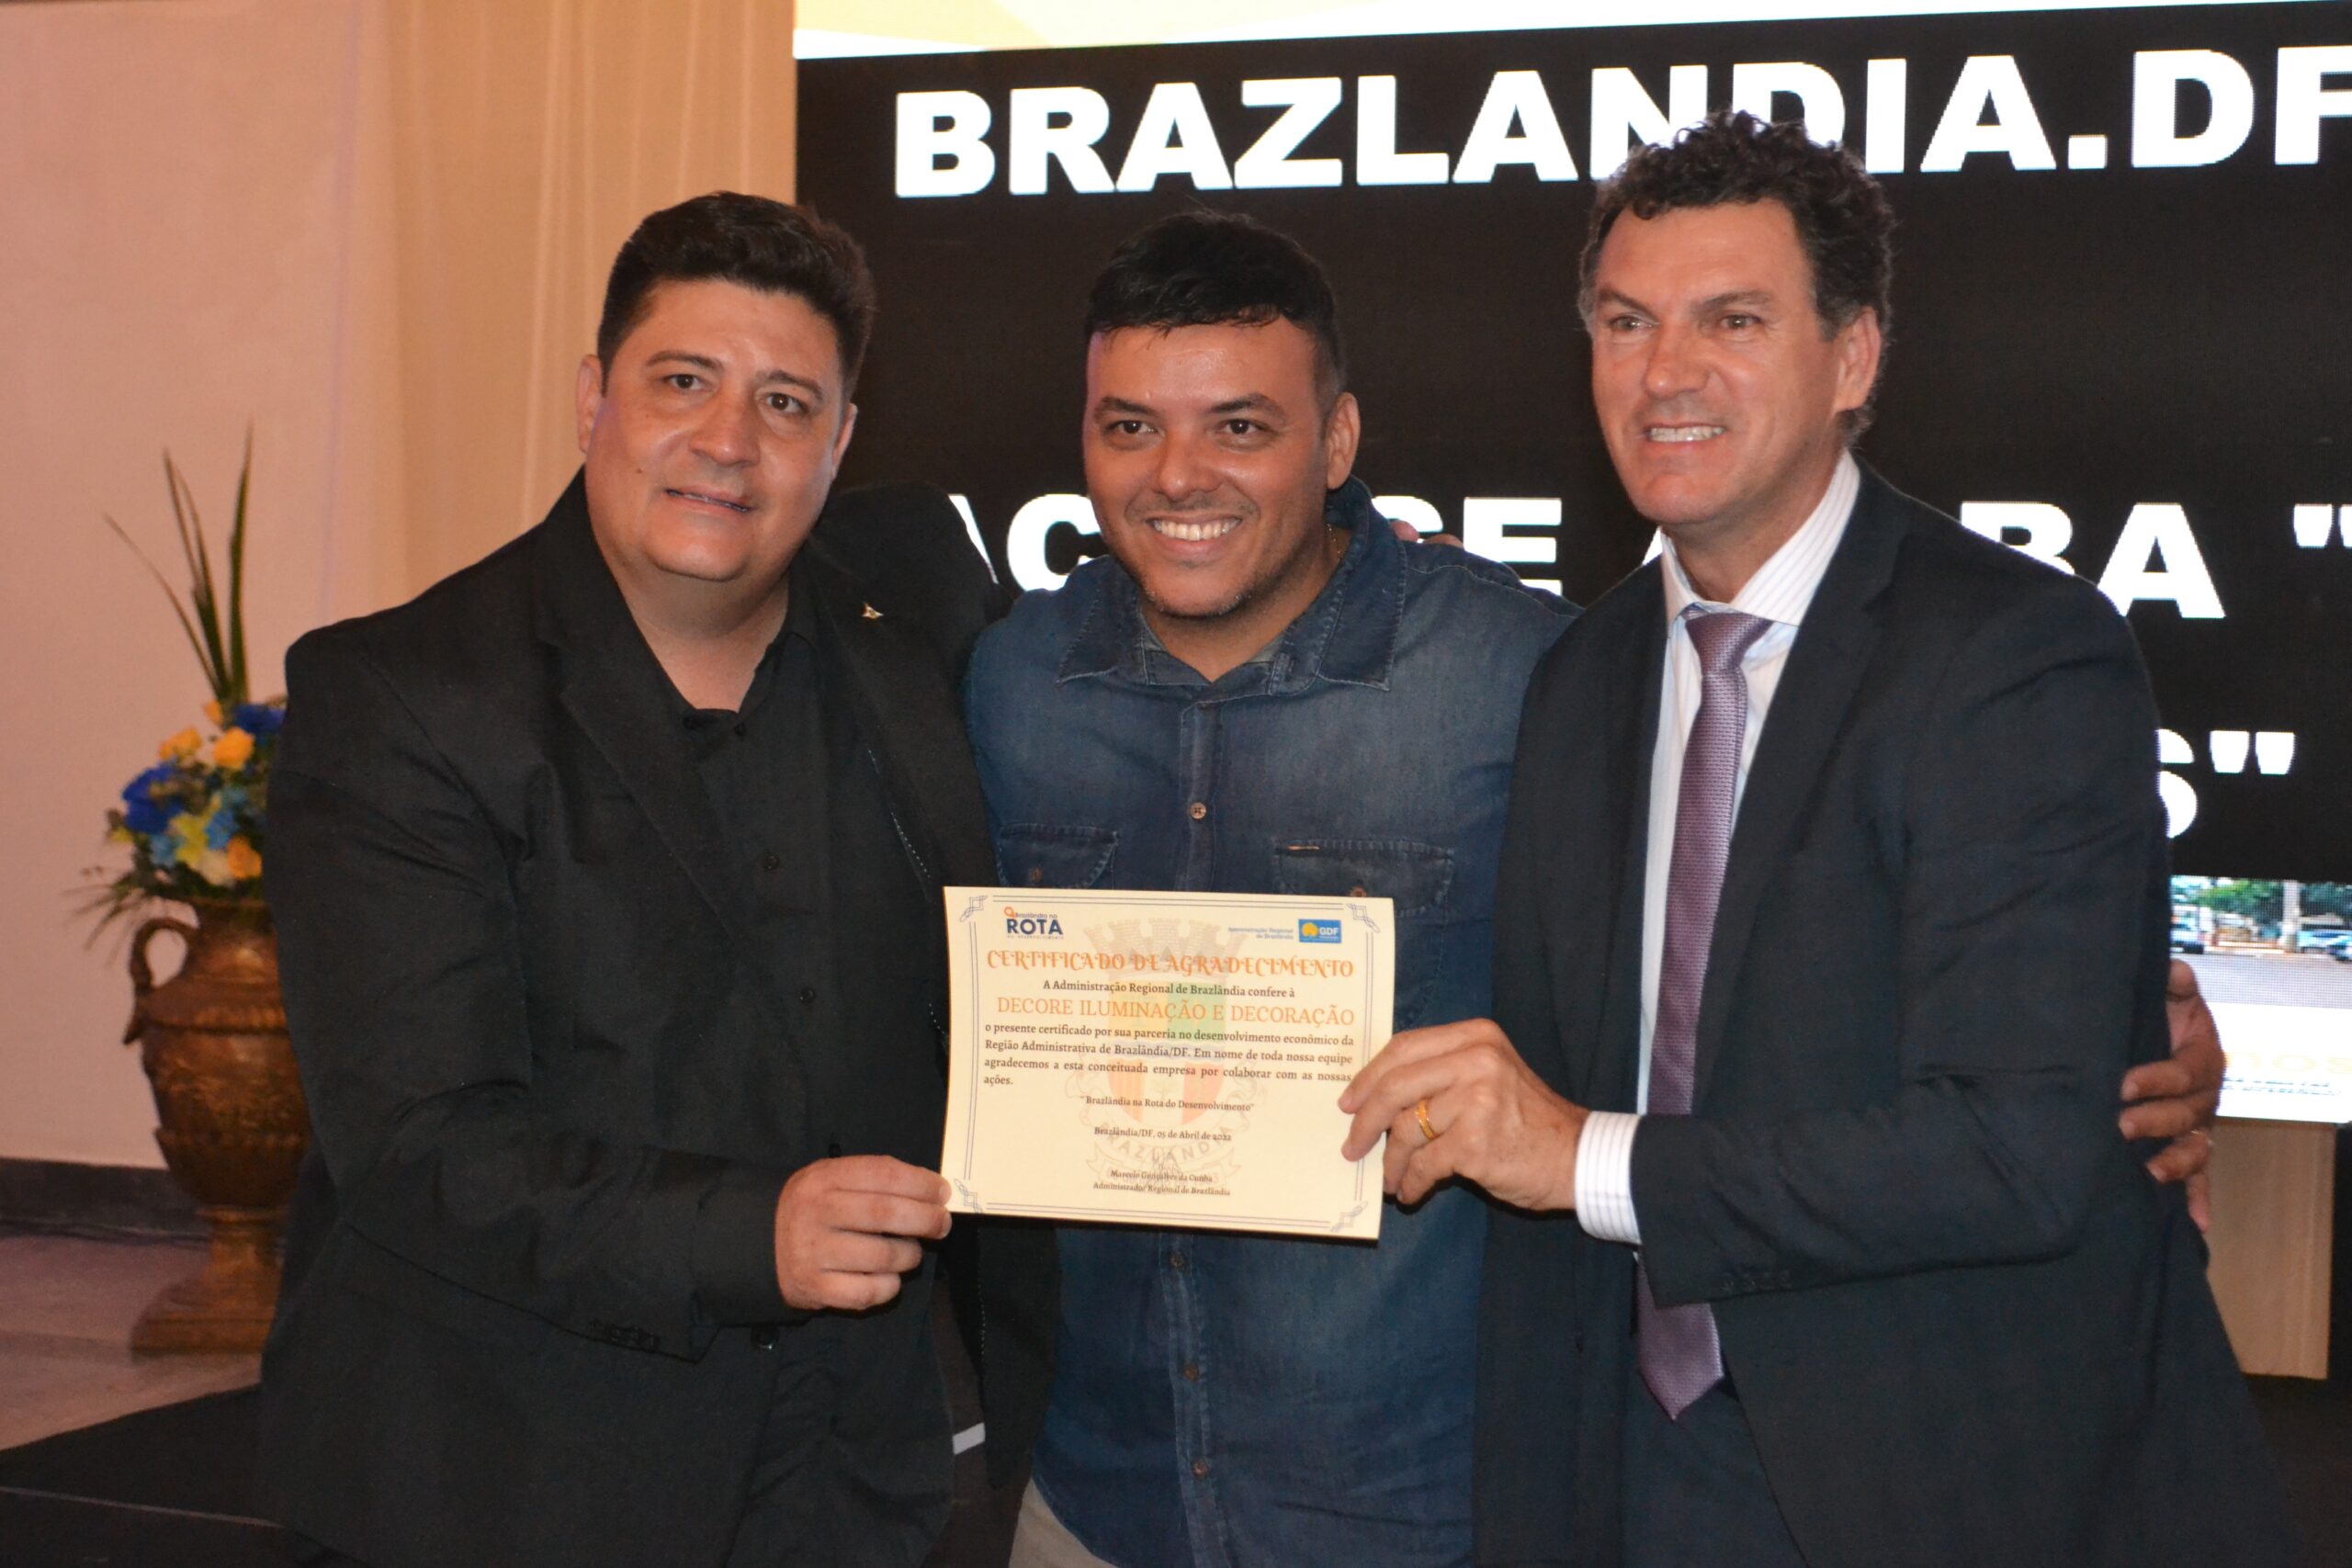 Turismo em Ação chega a Brazlândia – Administração Regional de Brazlândia